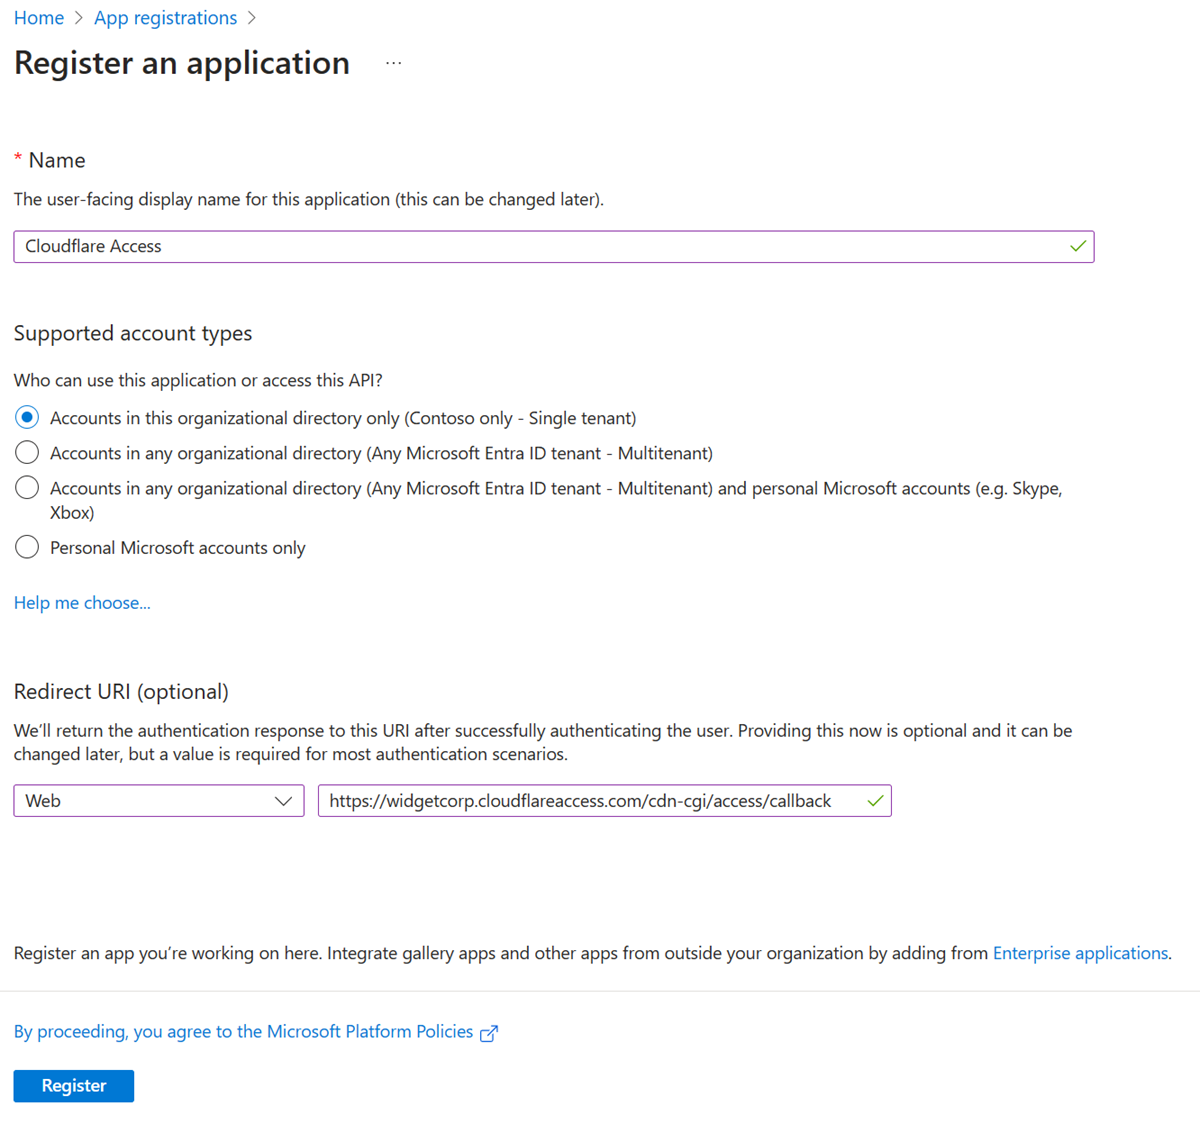 註冊應用程式的選項和選取項目的螢幕擷取畫面。